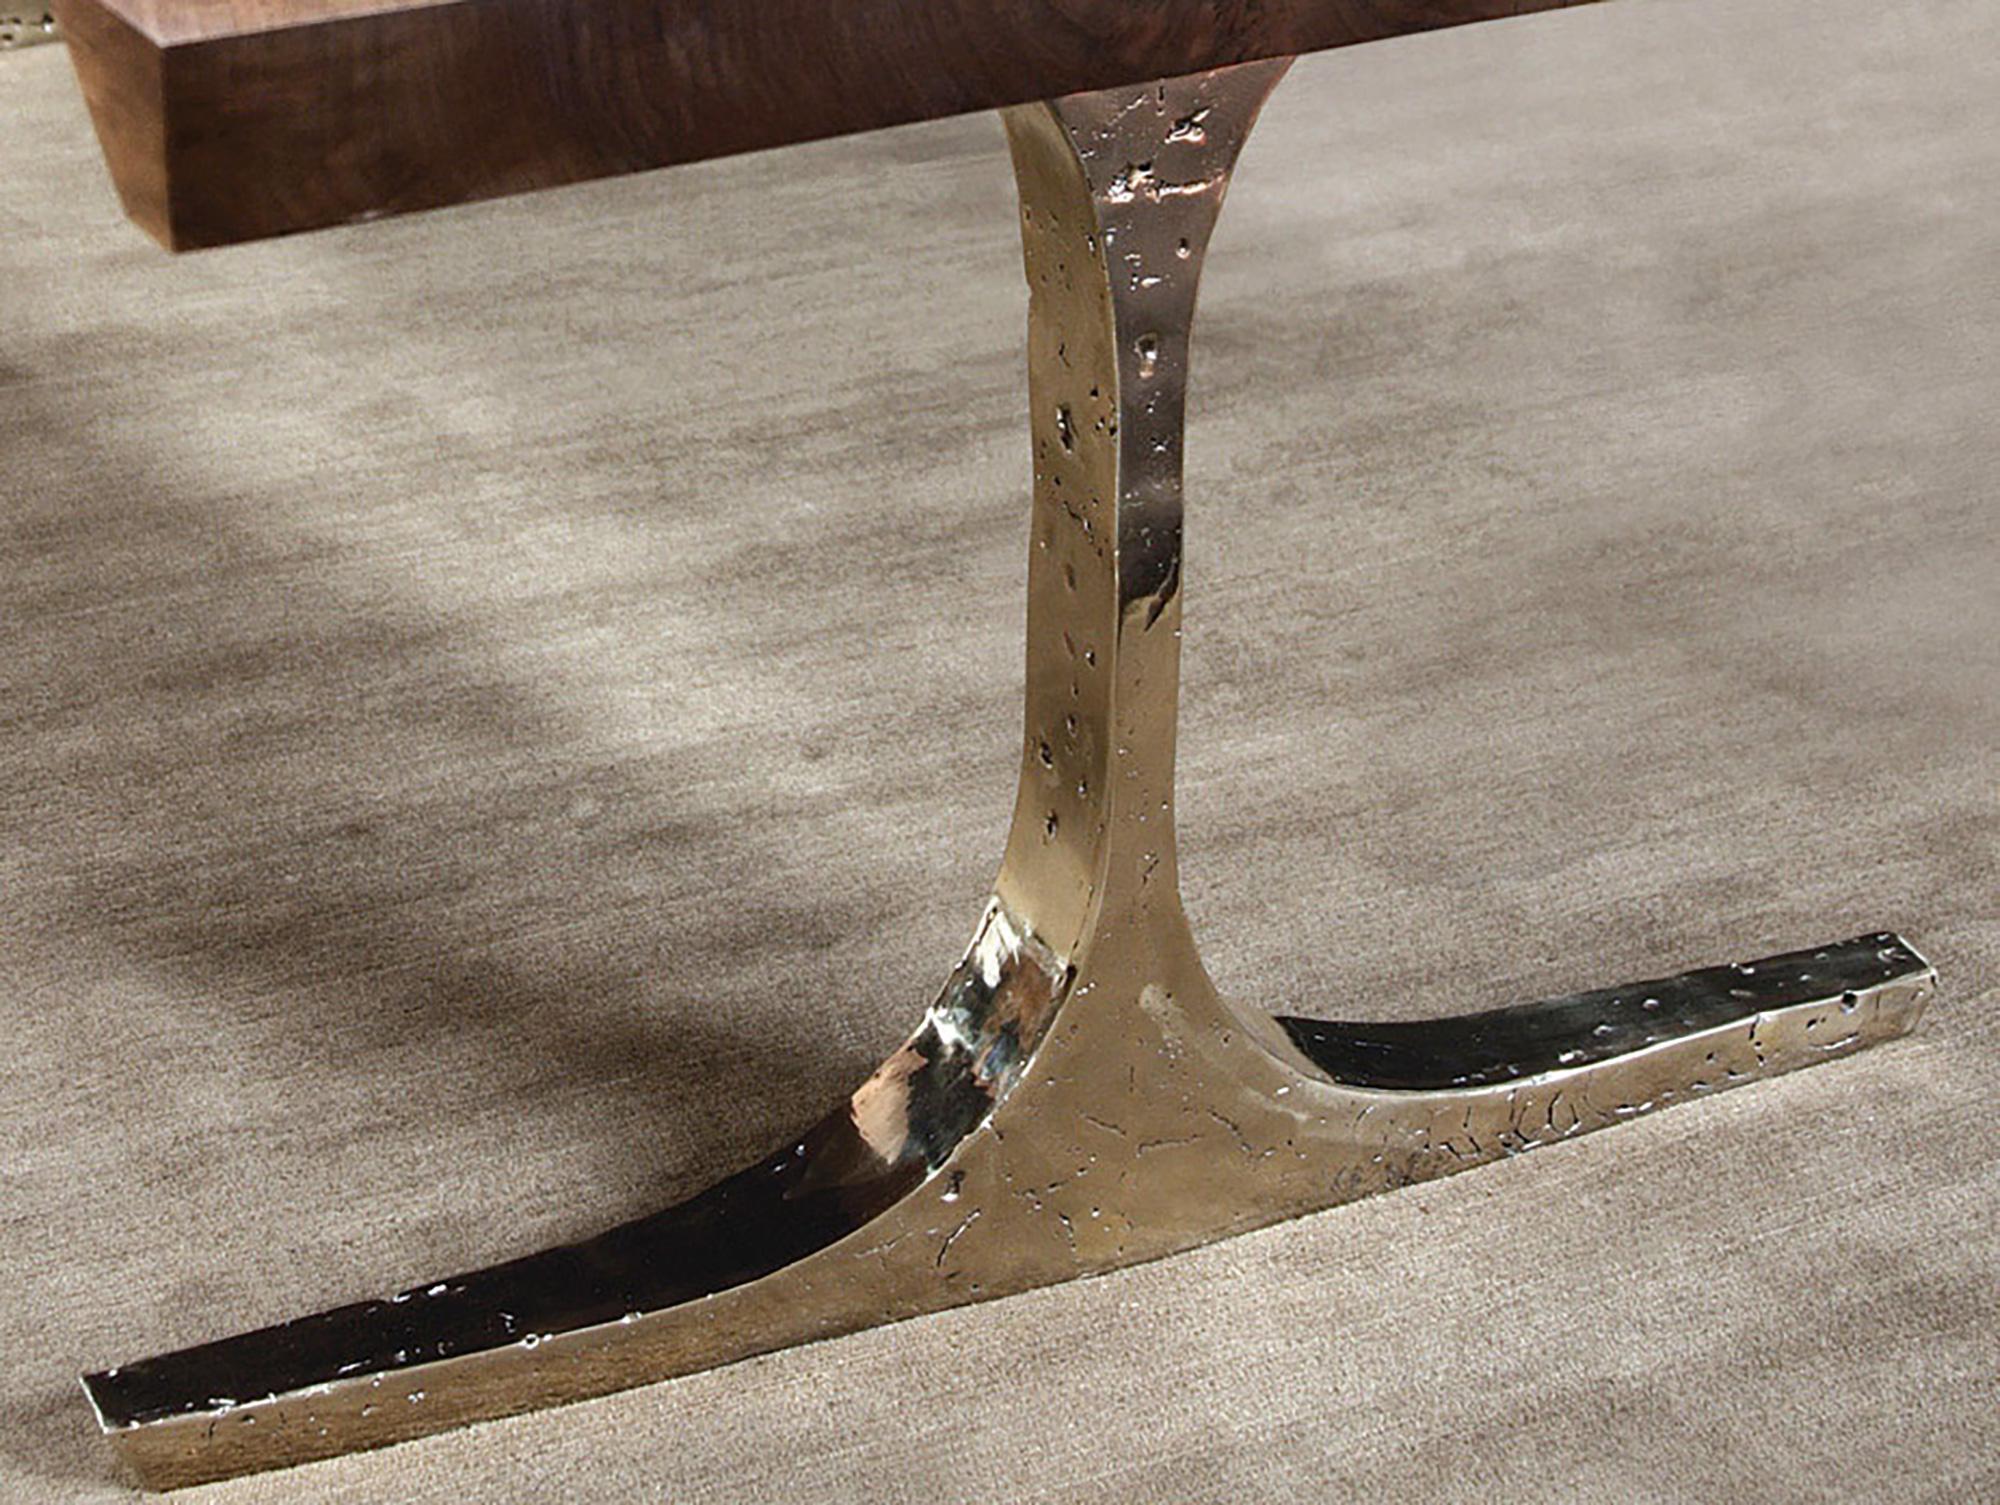 La table de salle à manger Knight Base de Barlas Baylar est dotée d'une base fabriquée en bronze pur à l'aide de techniques de sculpture anciennes afin de transmettre un sentiment d'intégrité, de force et de caractère audacieux.  La conception de la